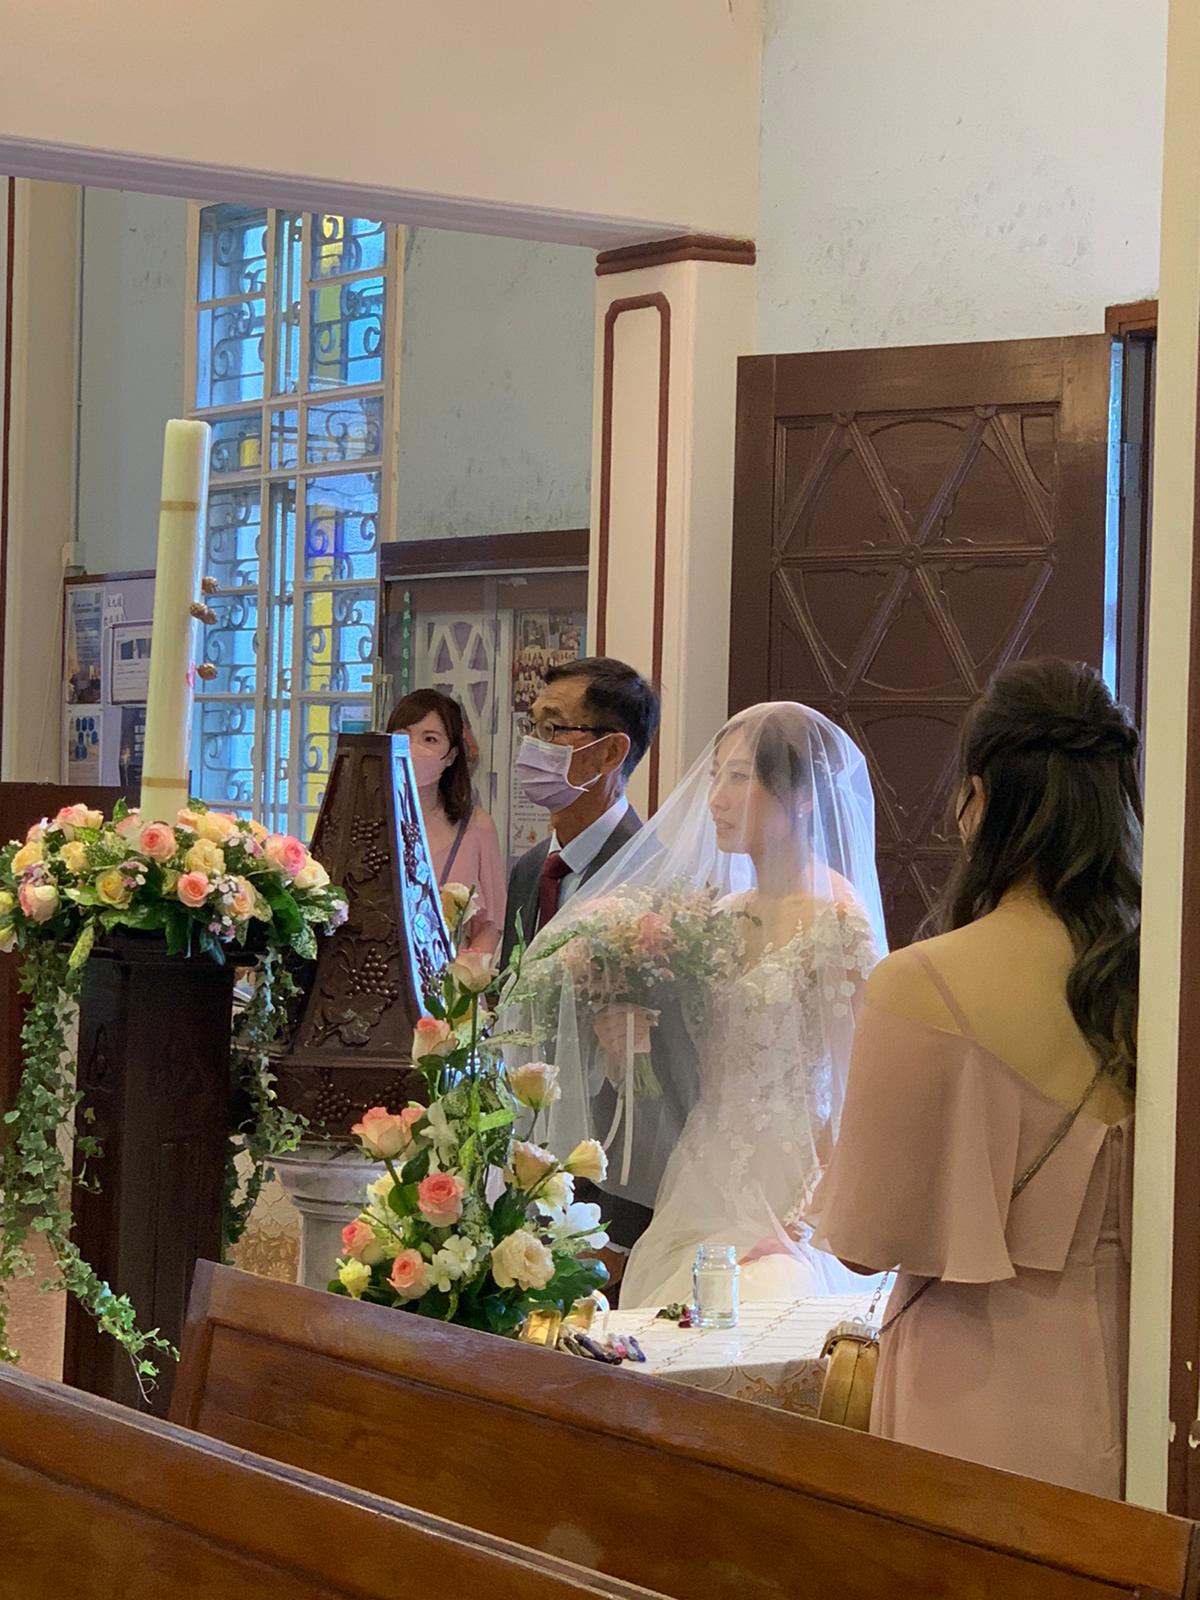 Queeny Ng之婚禮統籌師紀錄: 200 人來教堂祝福這對新人，真的感恩